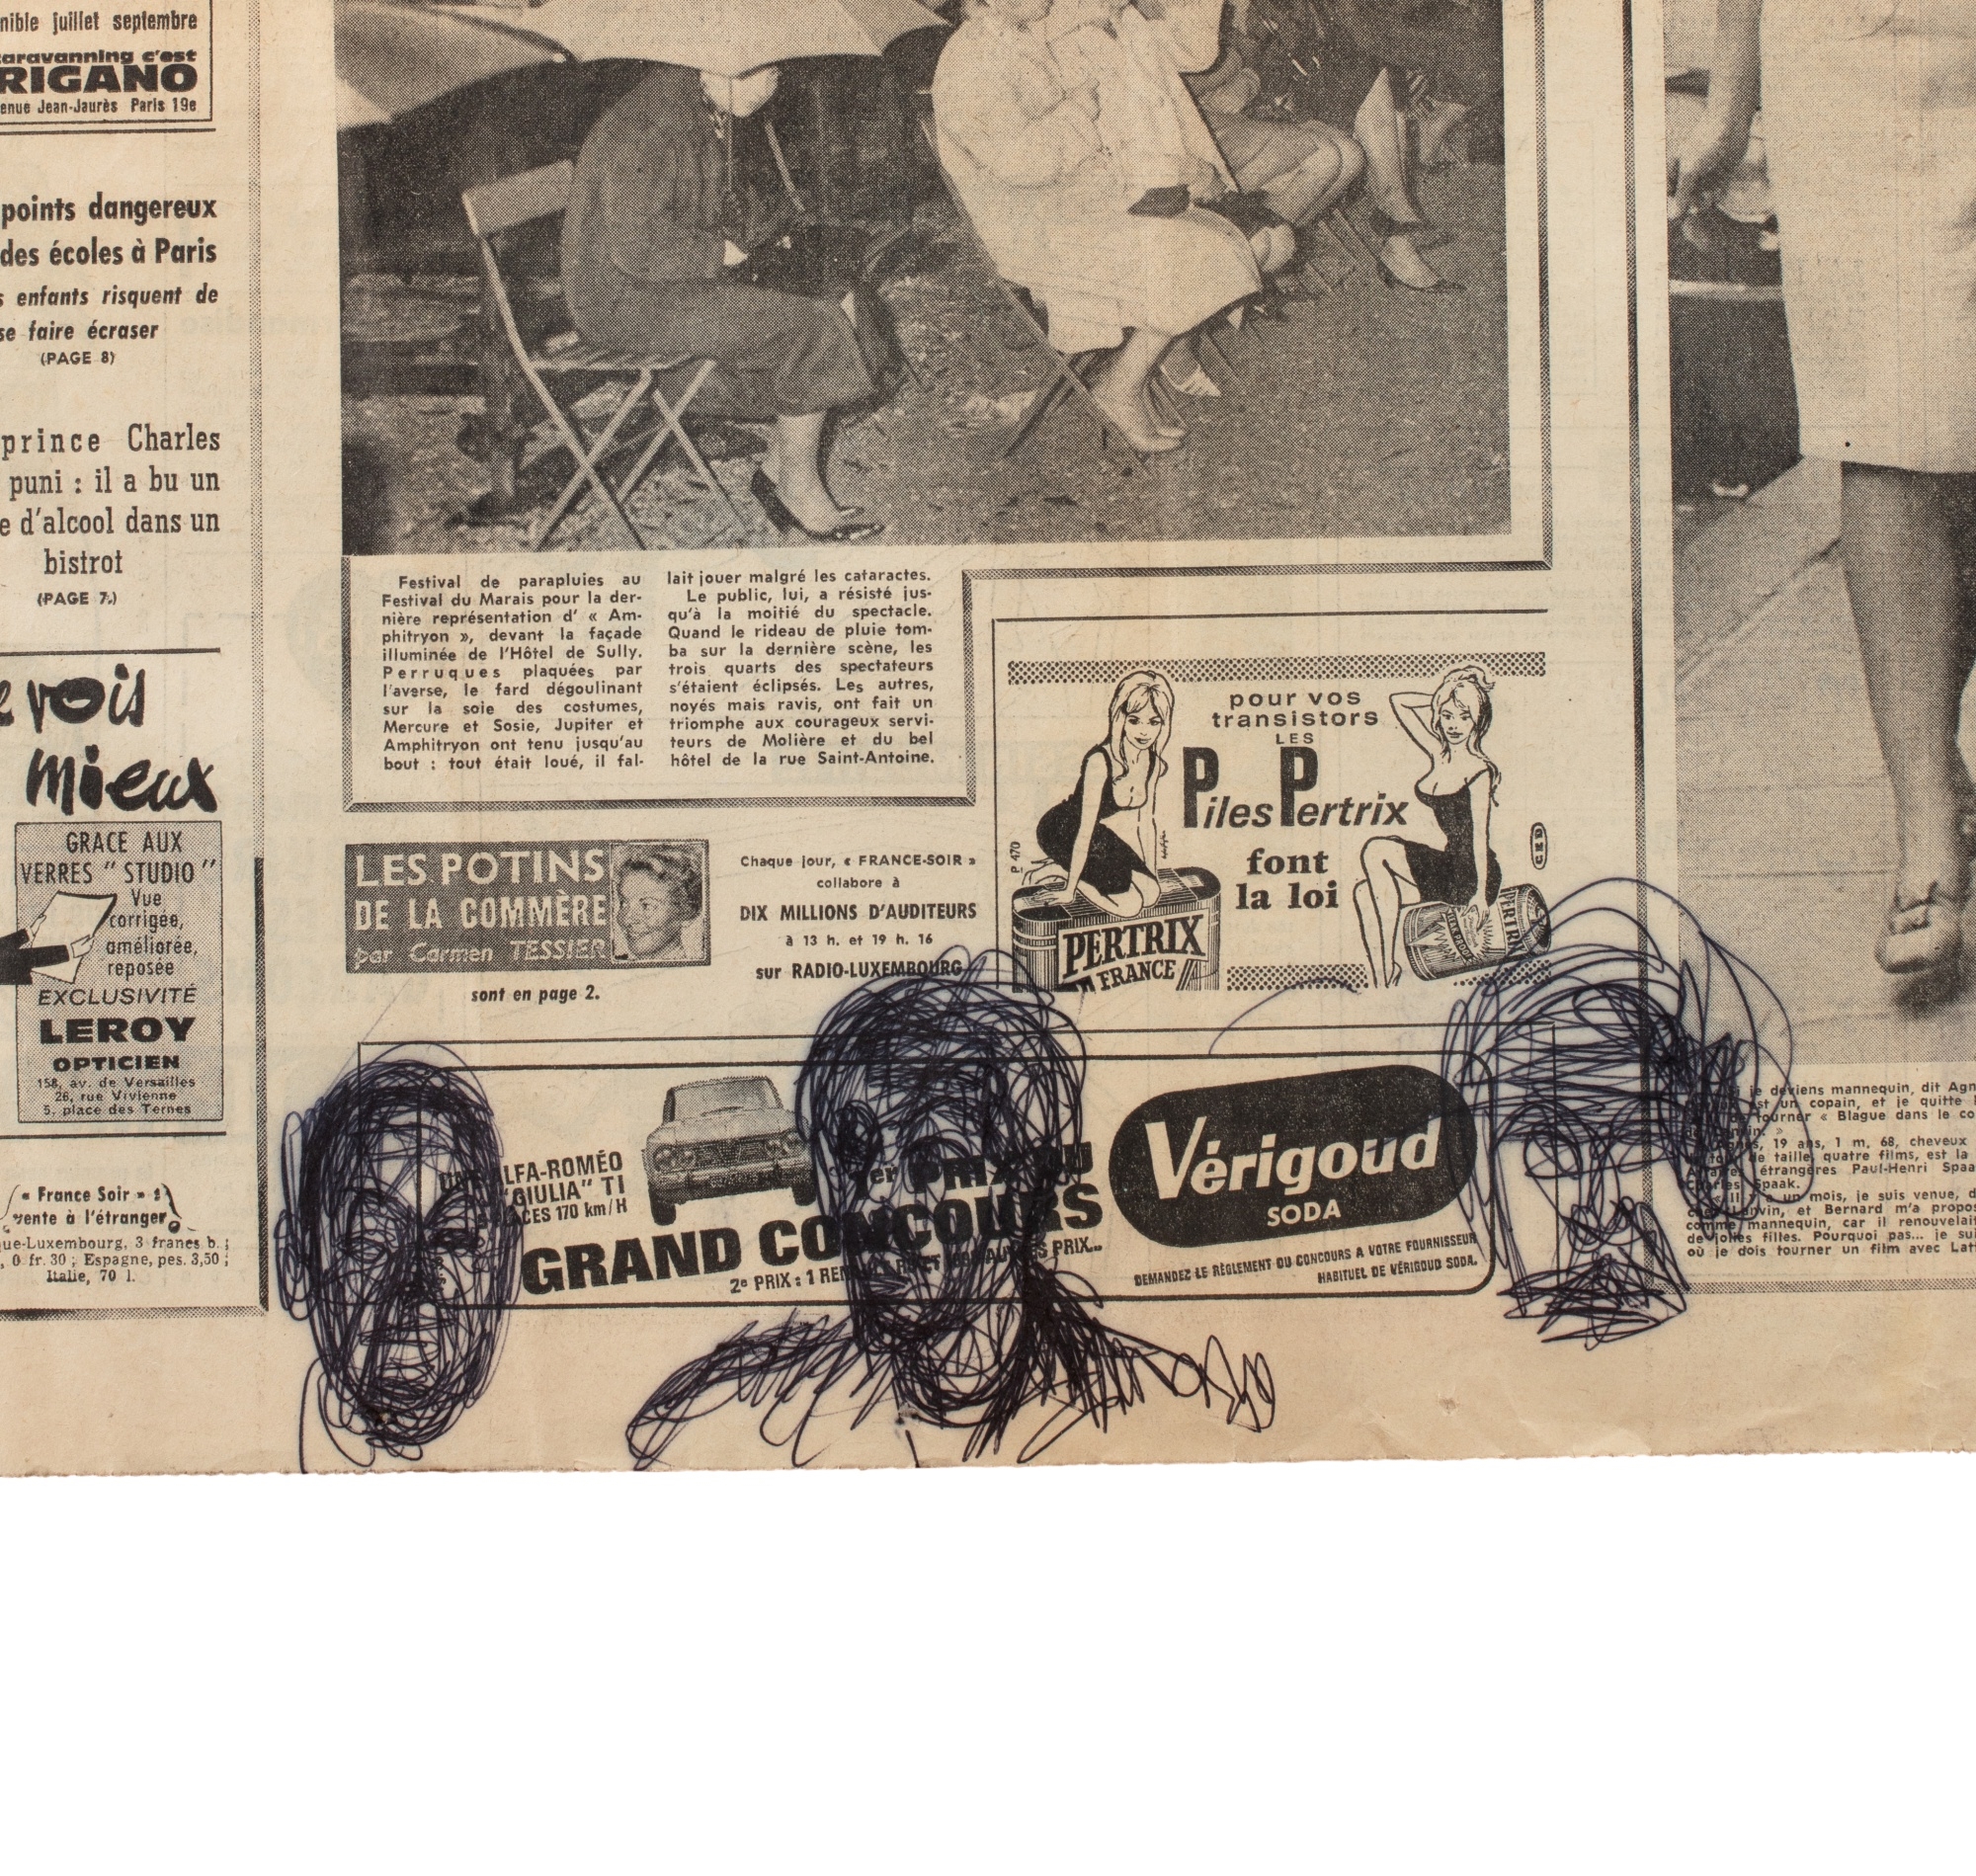 Esquisses de têtes d'hommes et compositions perspectivales sur la une de France Soir, 21 juin 1963 - Alberto Giacometti